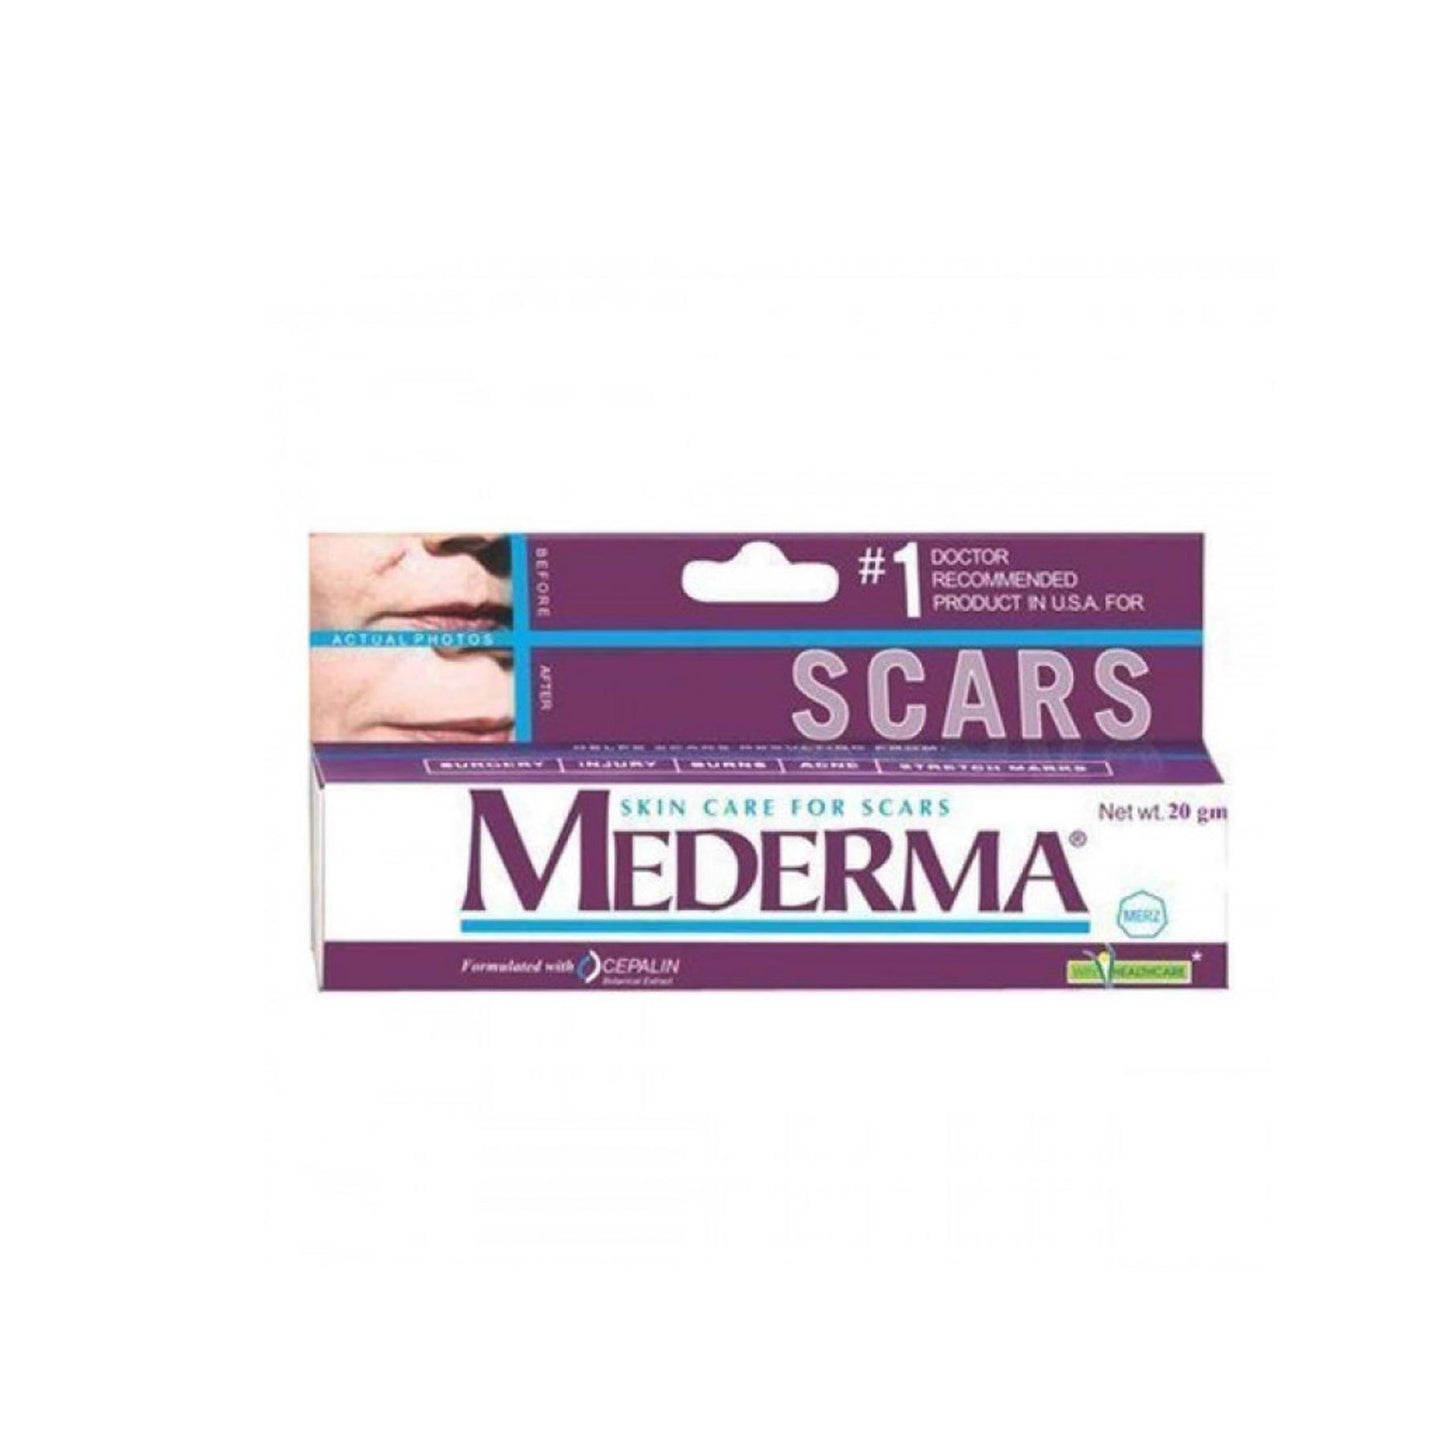 Mederma Skin Care For Scars, 20 gm